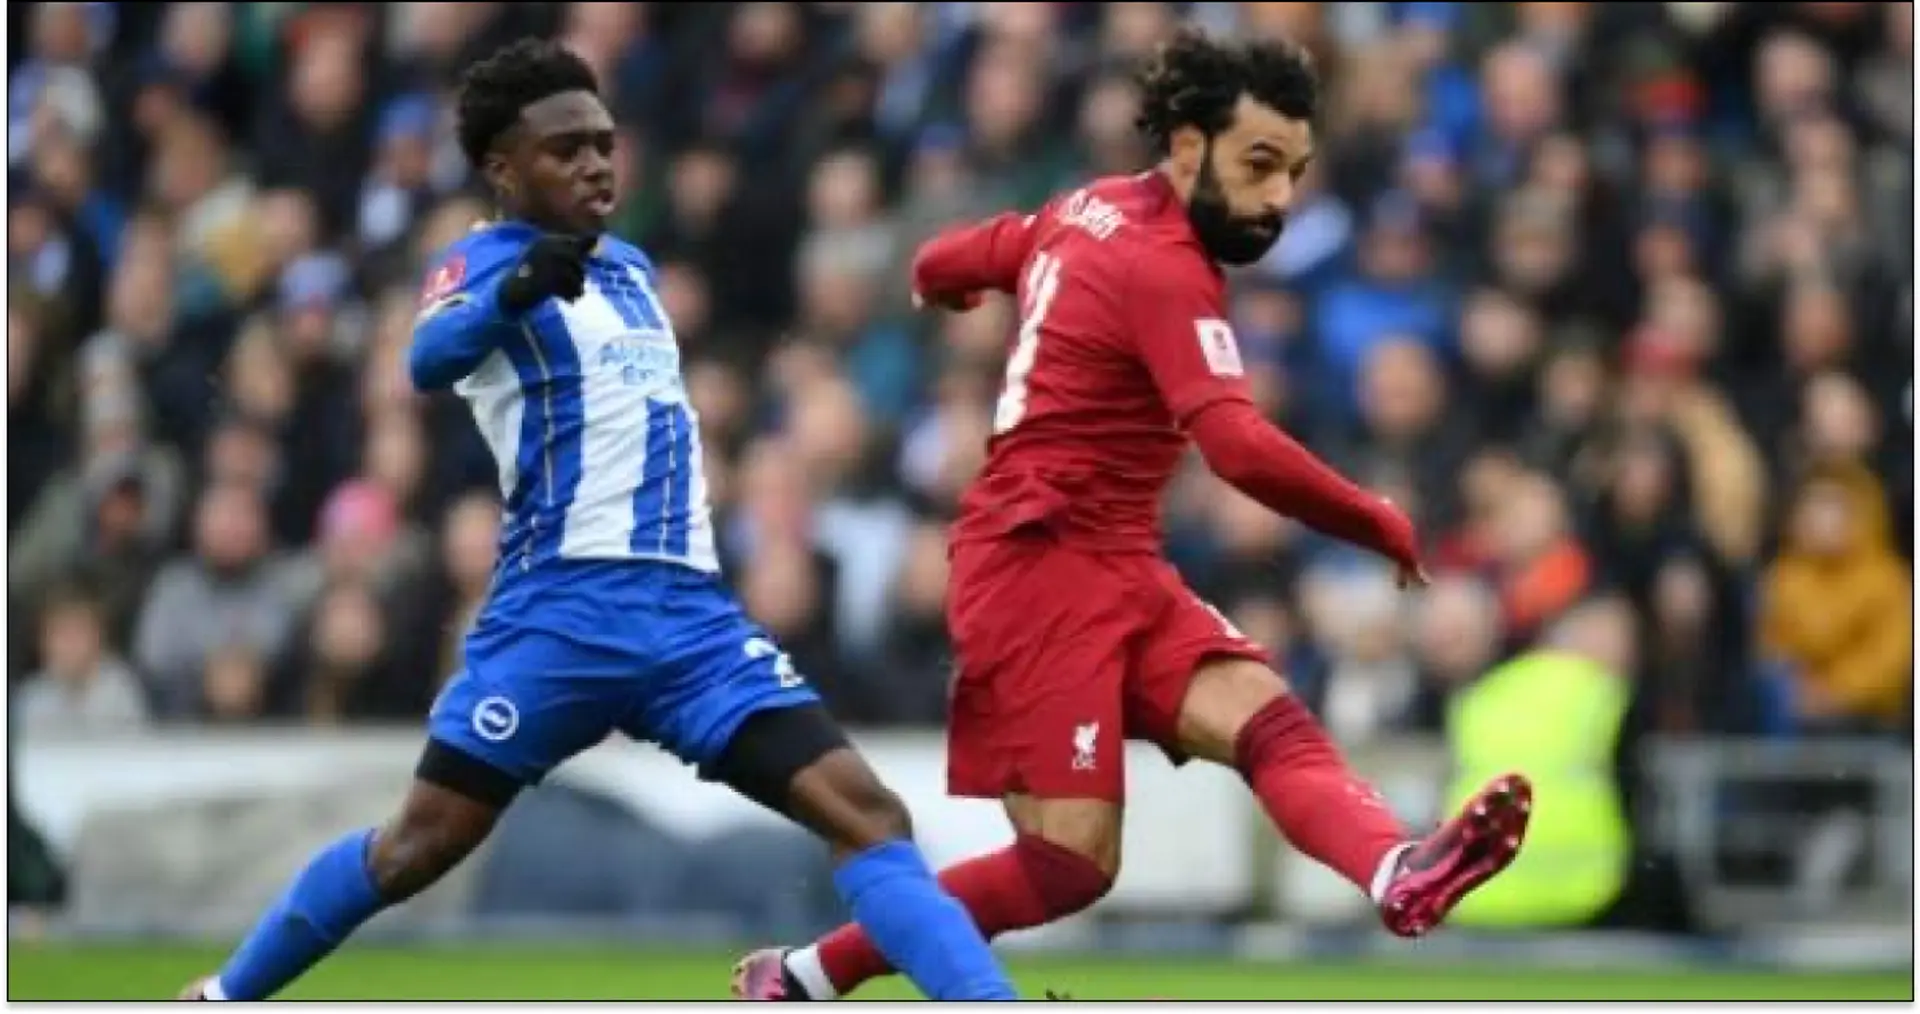 Konate 8, Salah 4: Liverpool player ratings in Brighton defeat